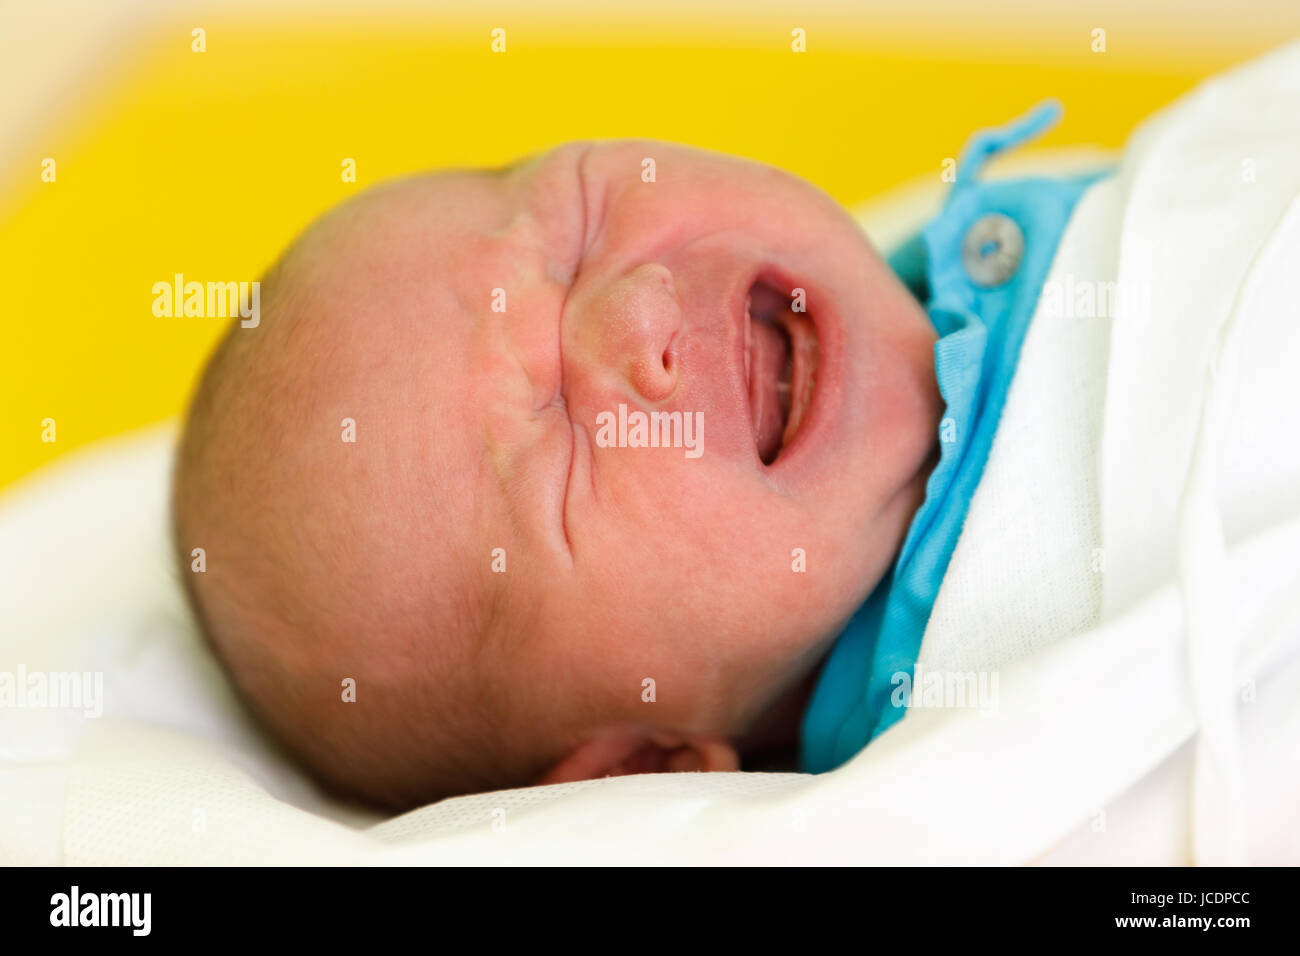 Neugeborenes Kind im Krankenhaus, die ersten Stunden des neuen Lebens, einen Tag nach der Geburt zu weinen Stockfoto